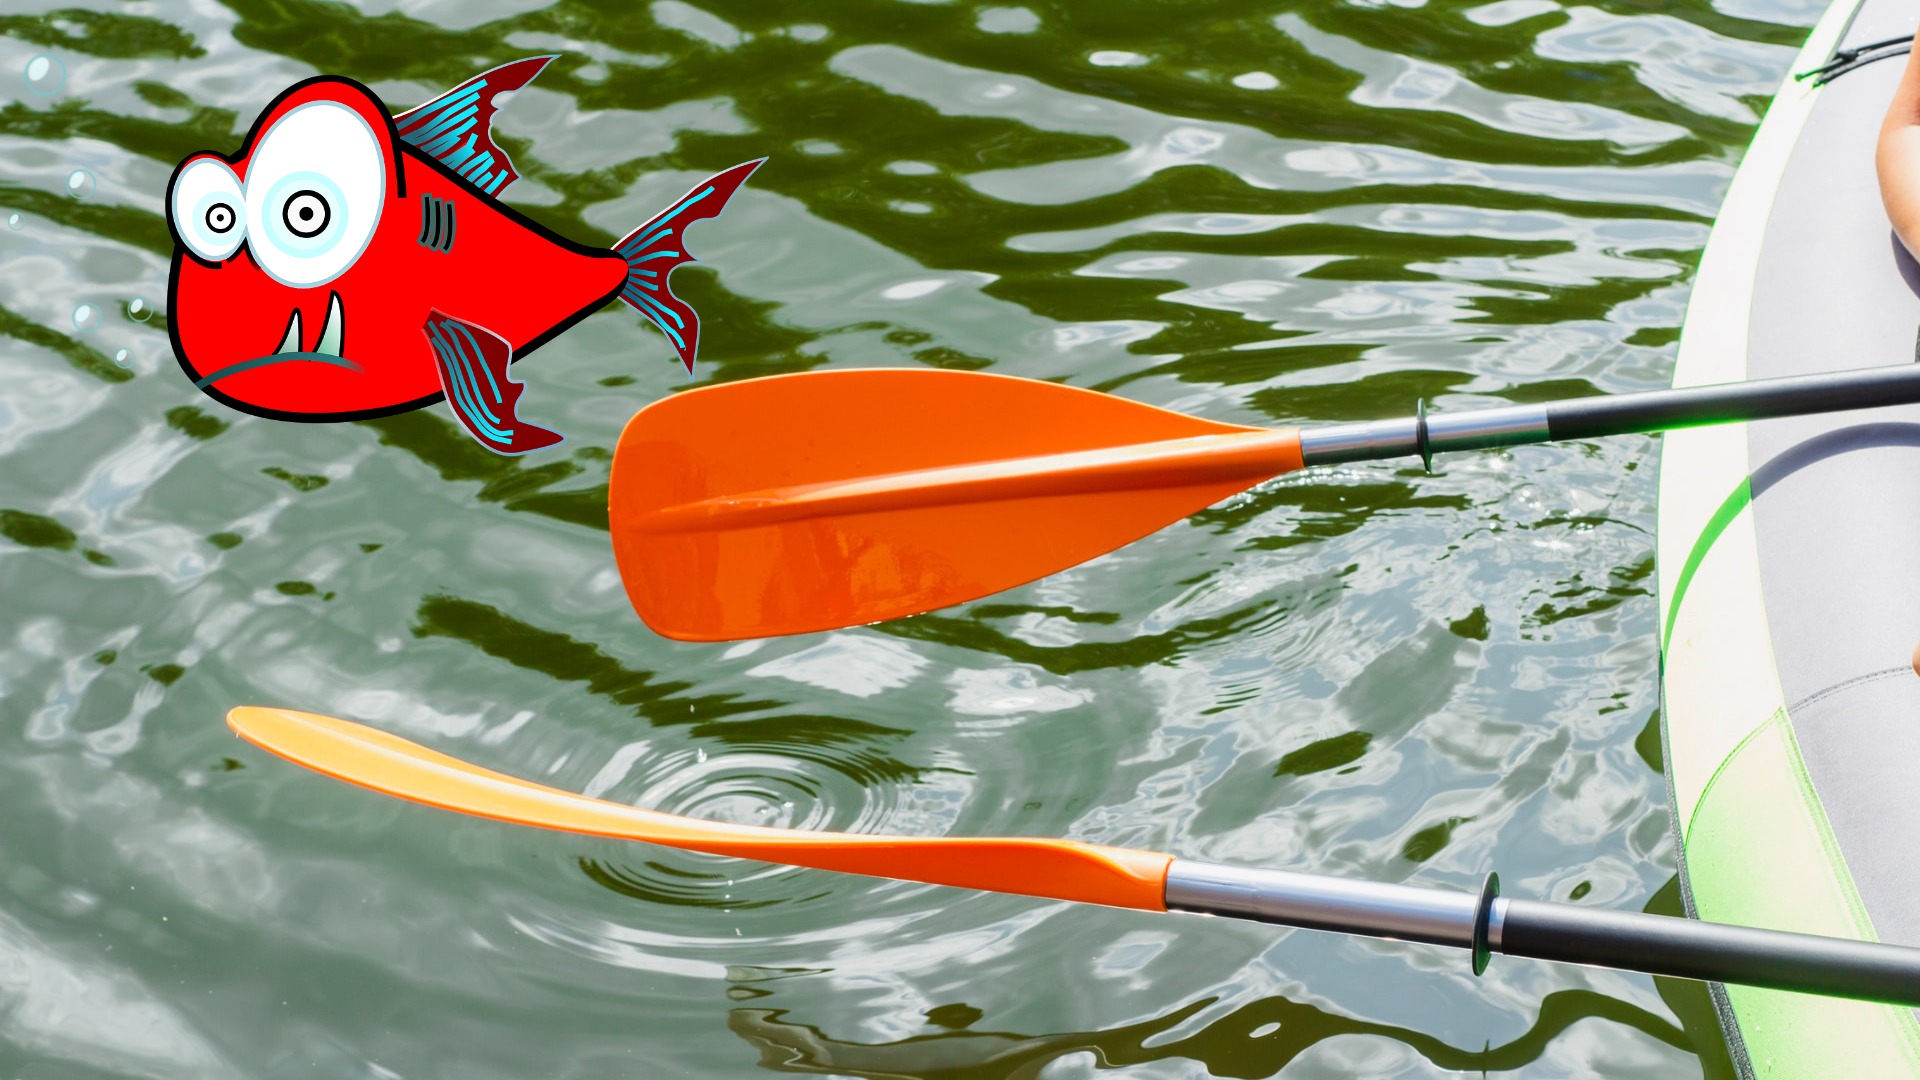 Universal Adjustable Detachable Comfortable Kayak Boat Fishing